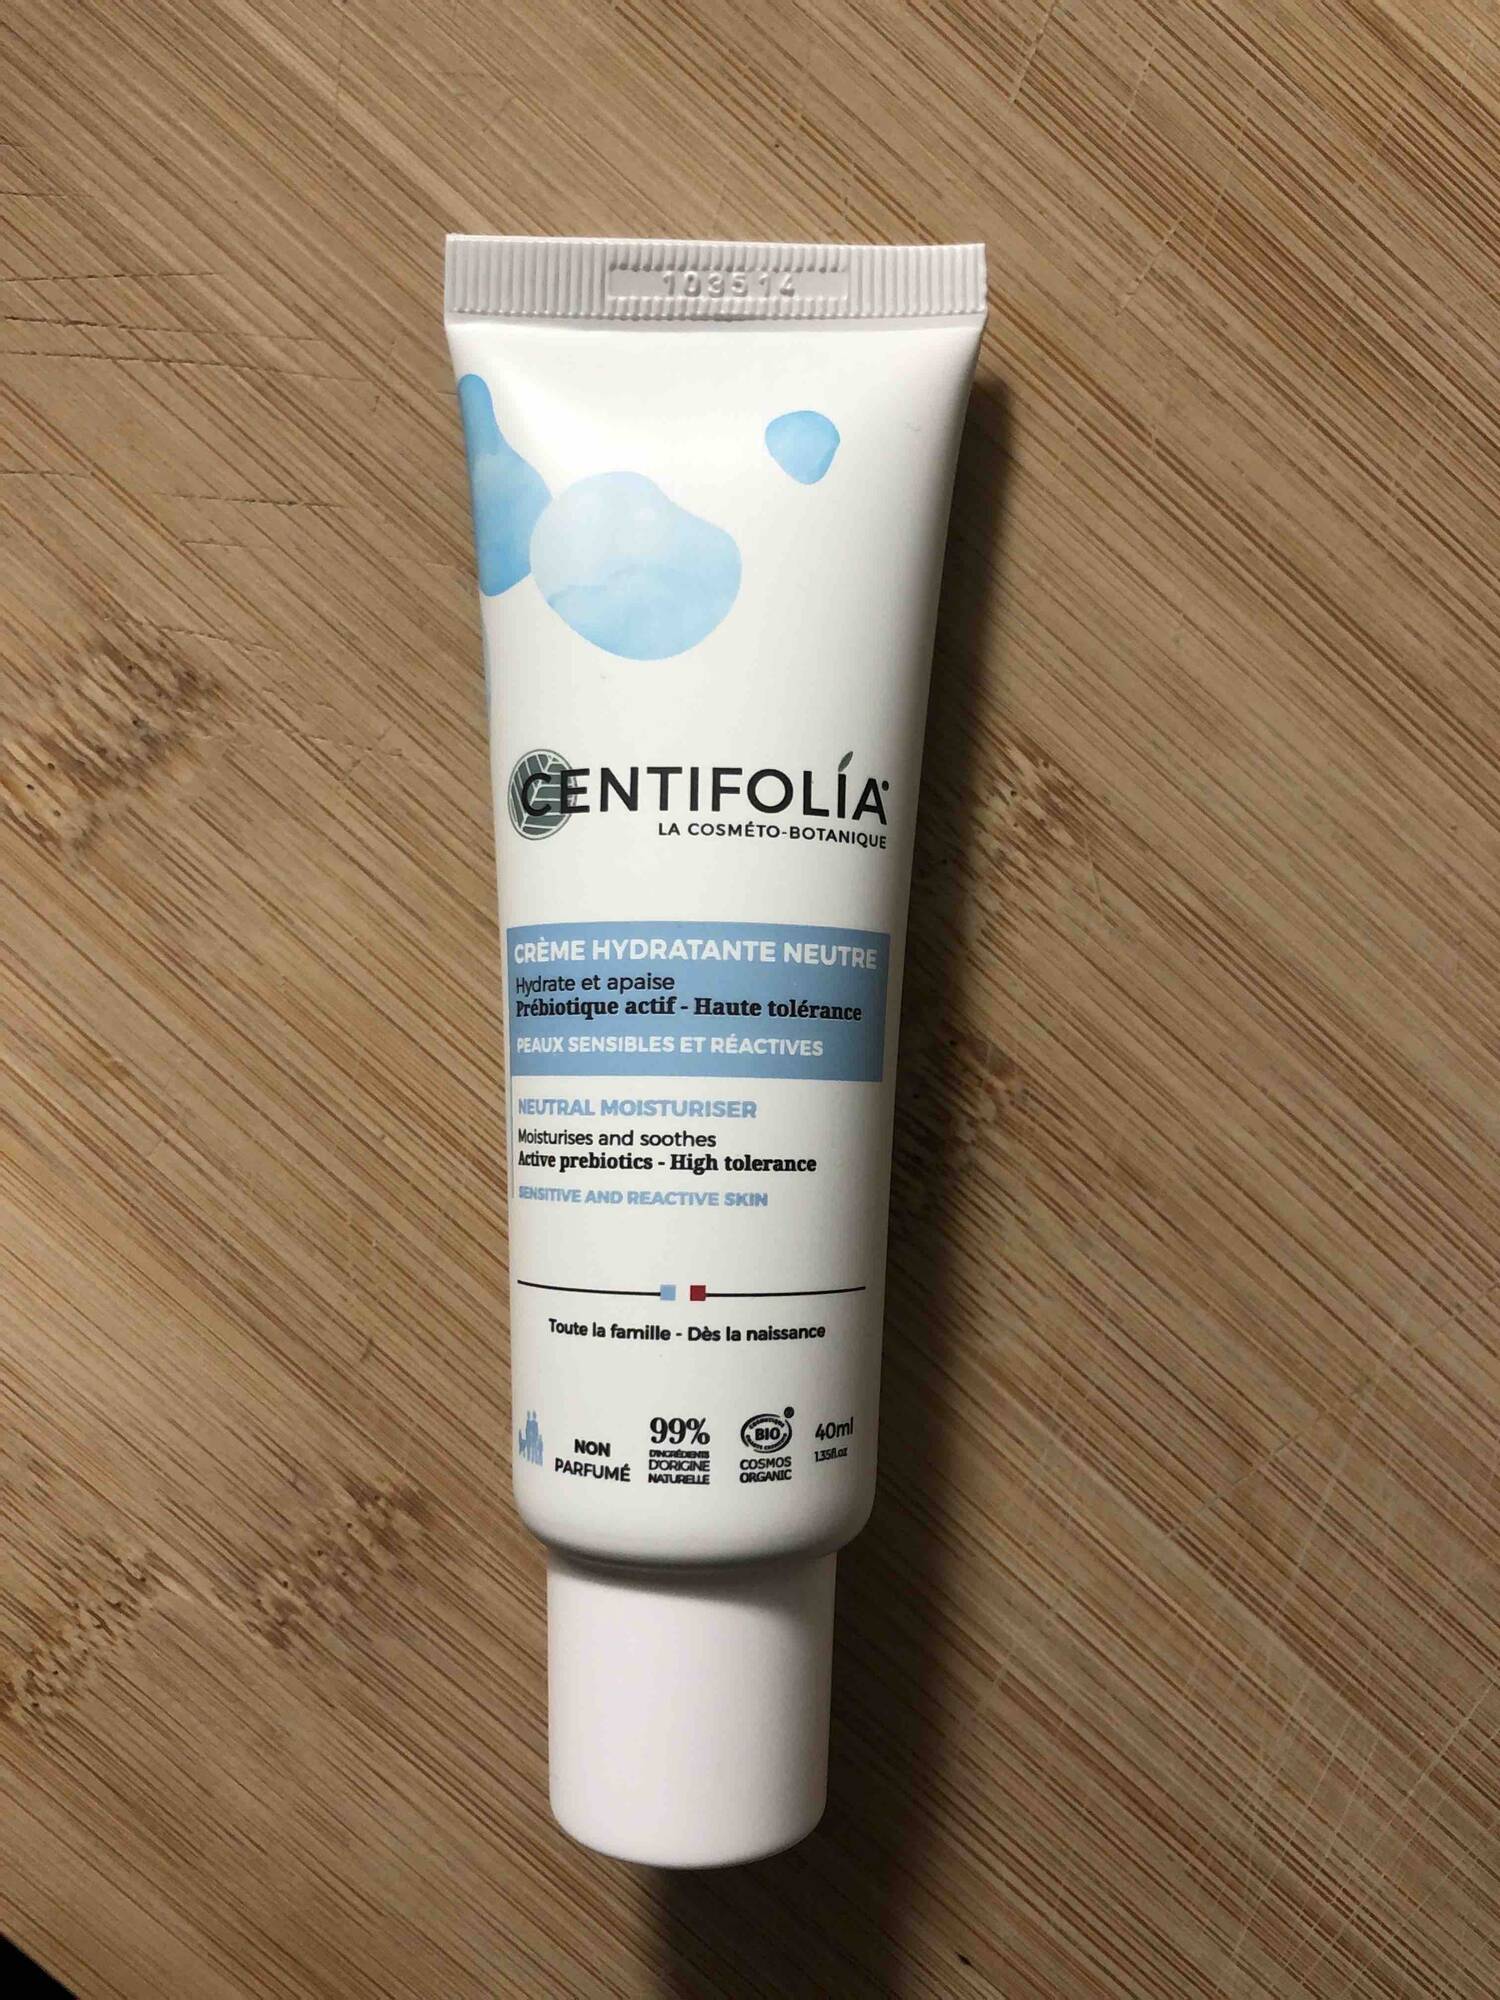 CENTIFOLIA - Crème hydratante neutre peaux sensibles et réactives